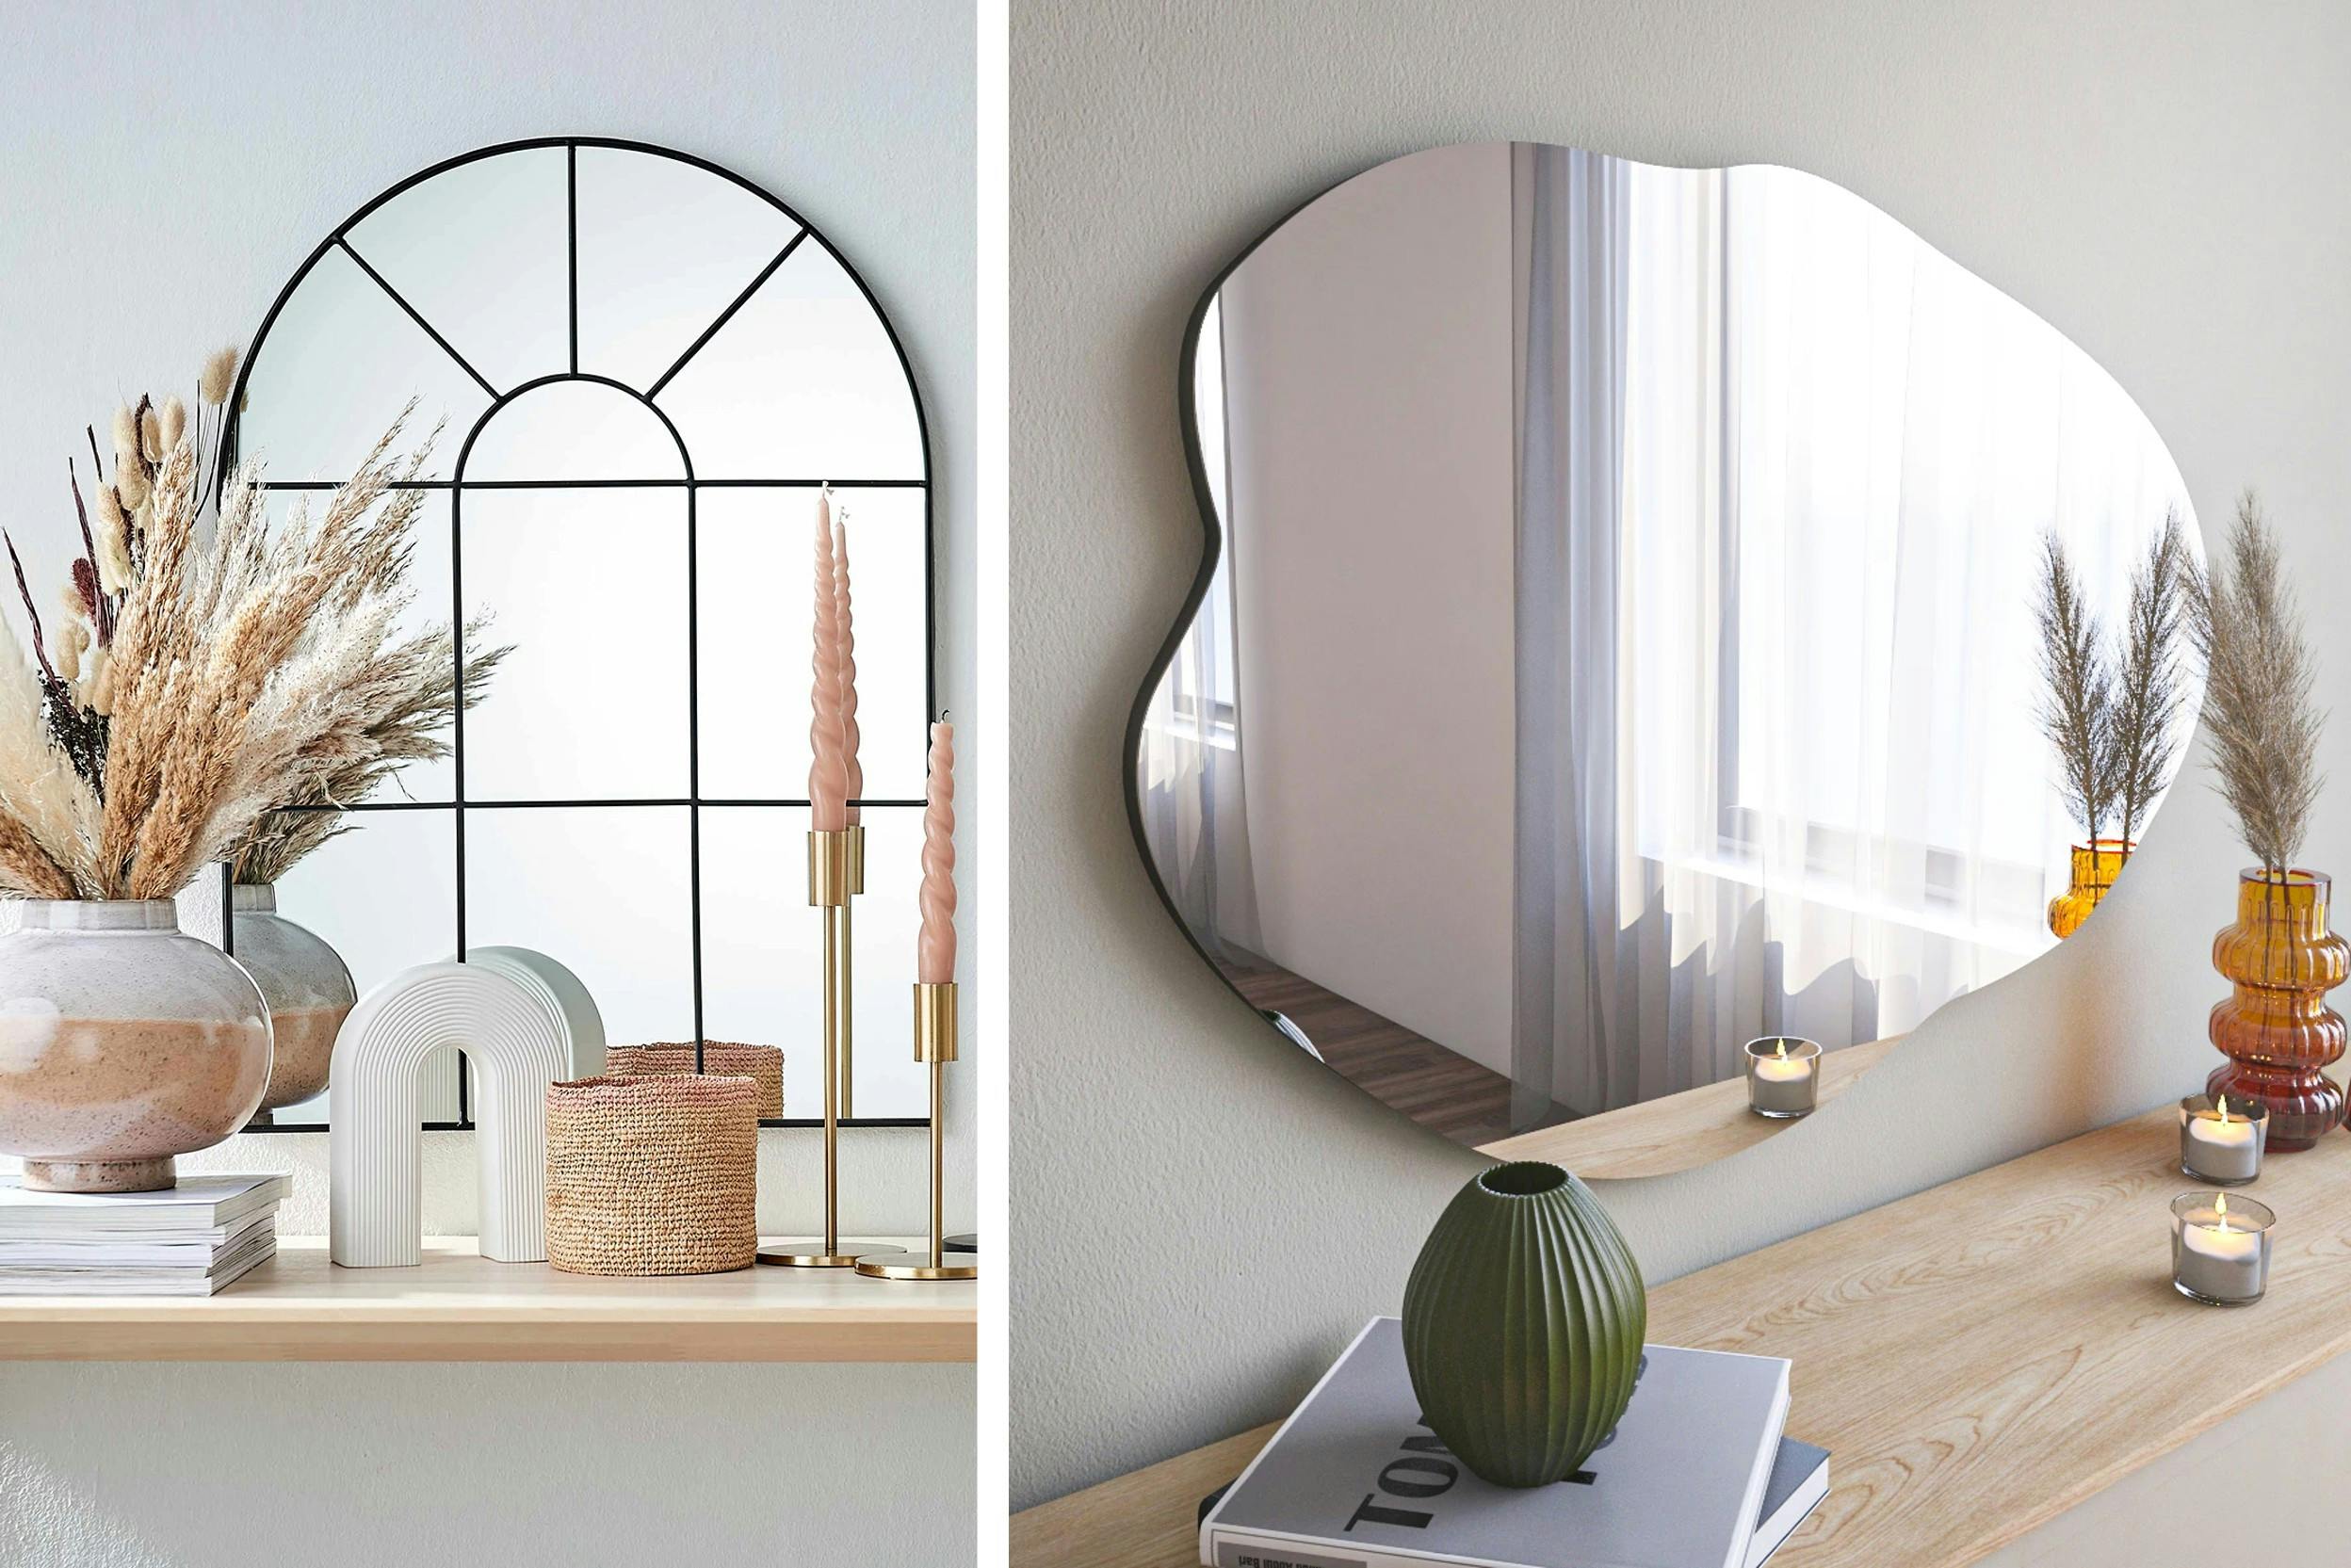 Collage di due immagini: sulla sinistra uno specchio a forma di finestra e sulla destra uno specchio di forma geometrica irregolare.